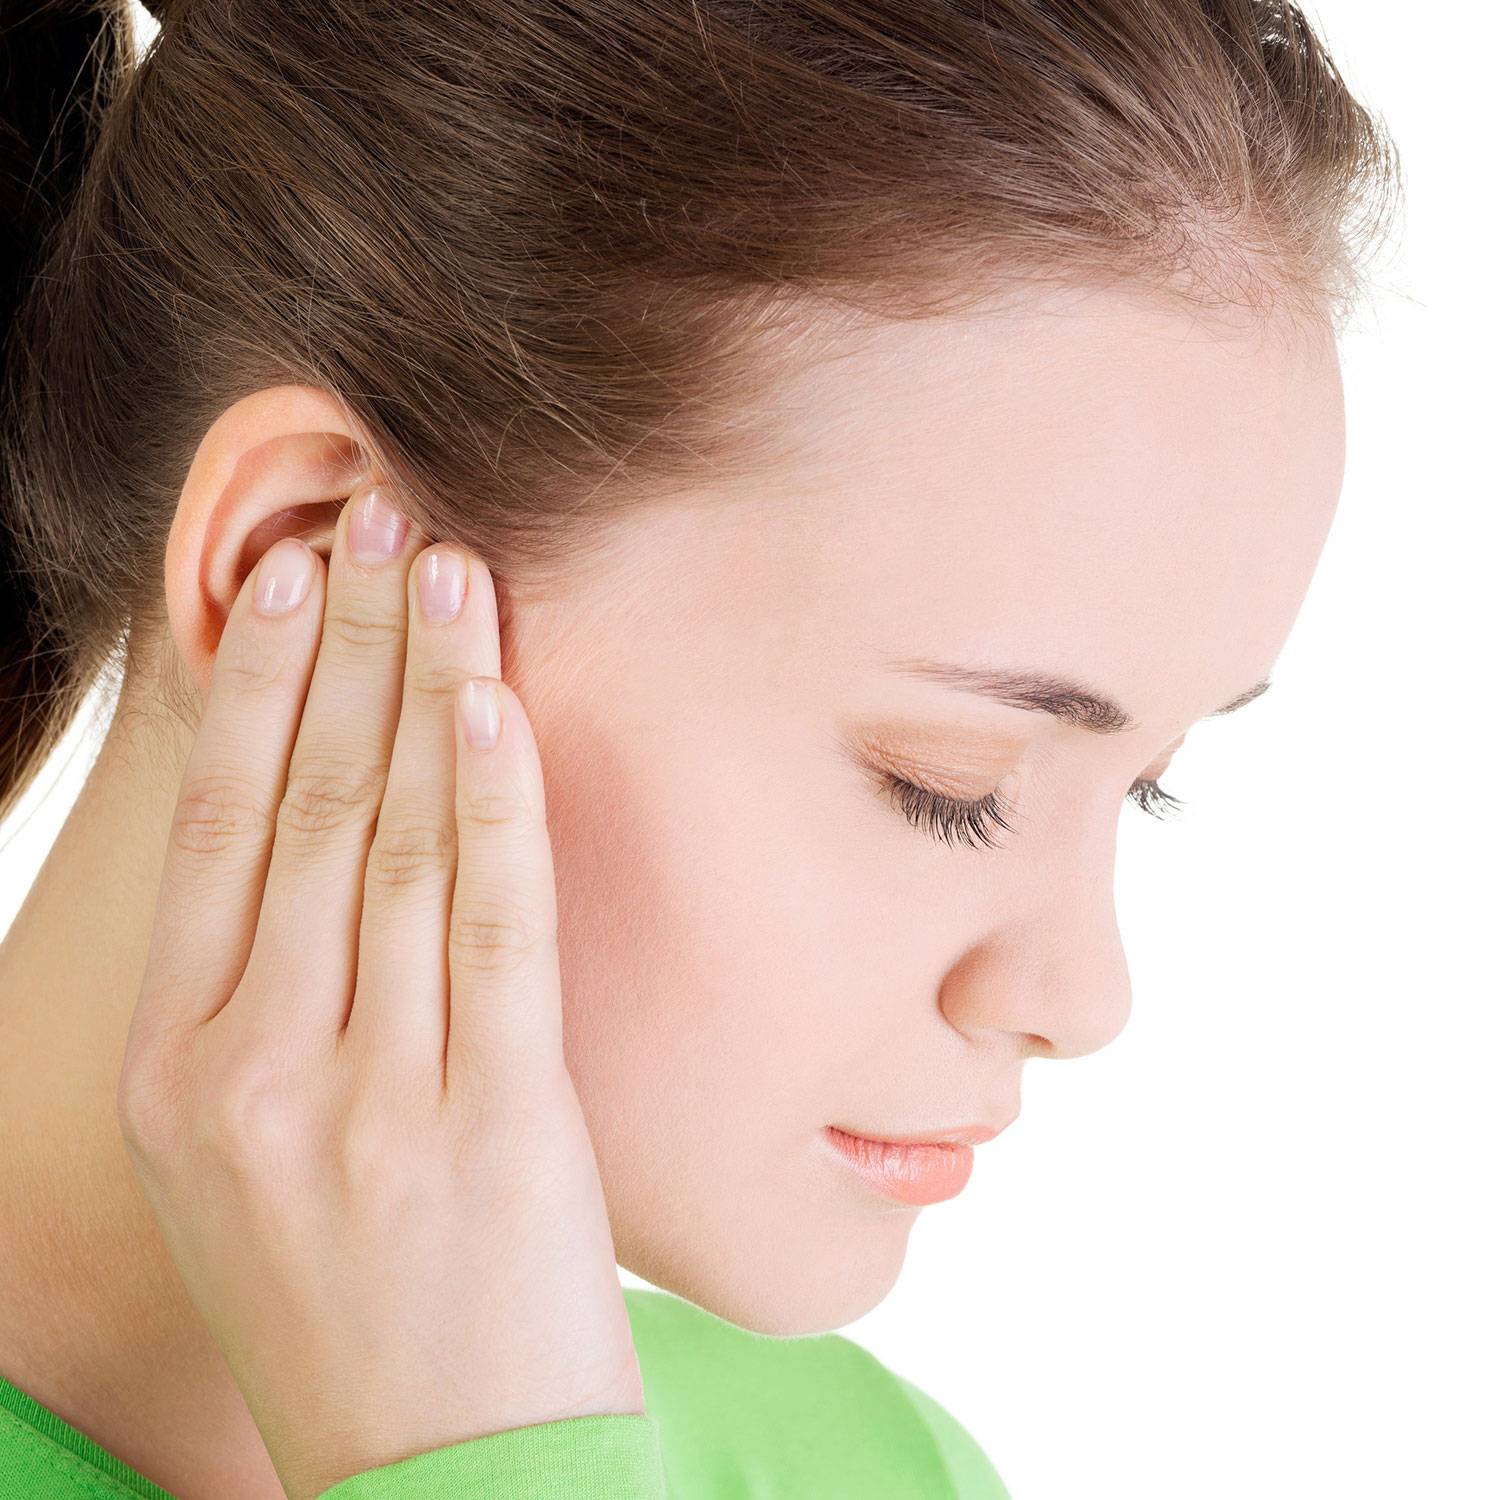 Заложенность ушей при насморке: лечение, возможные осложнения и профилактика - лортут